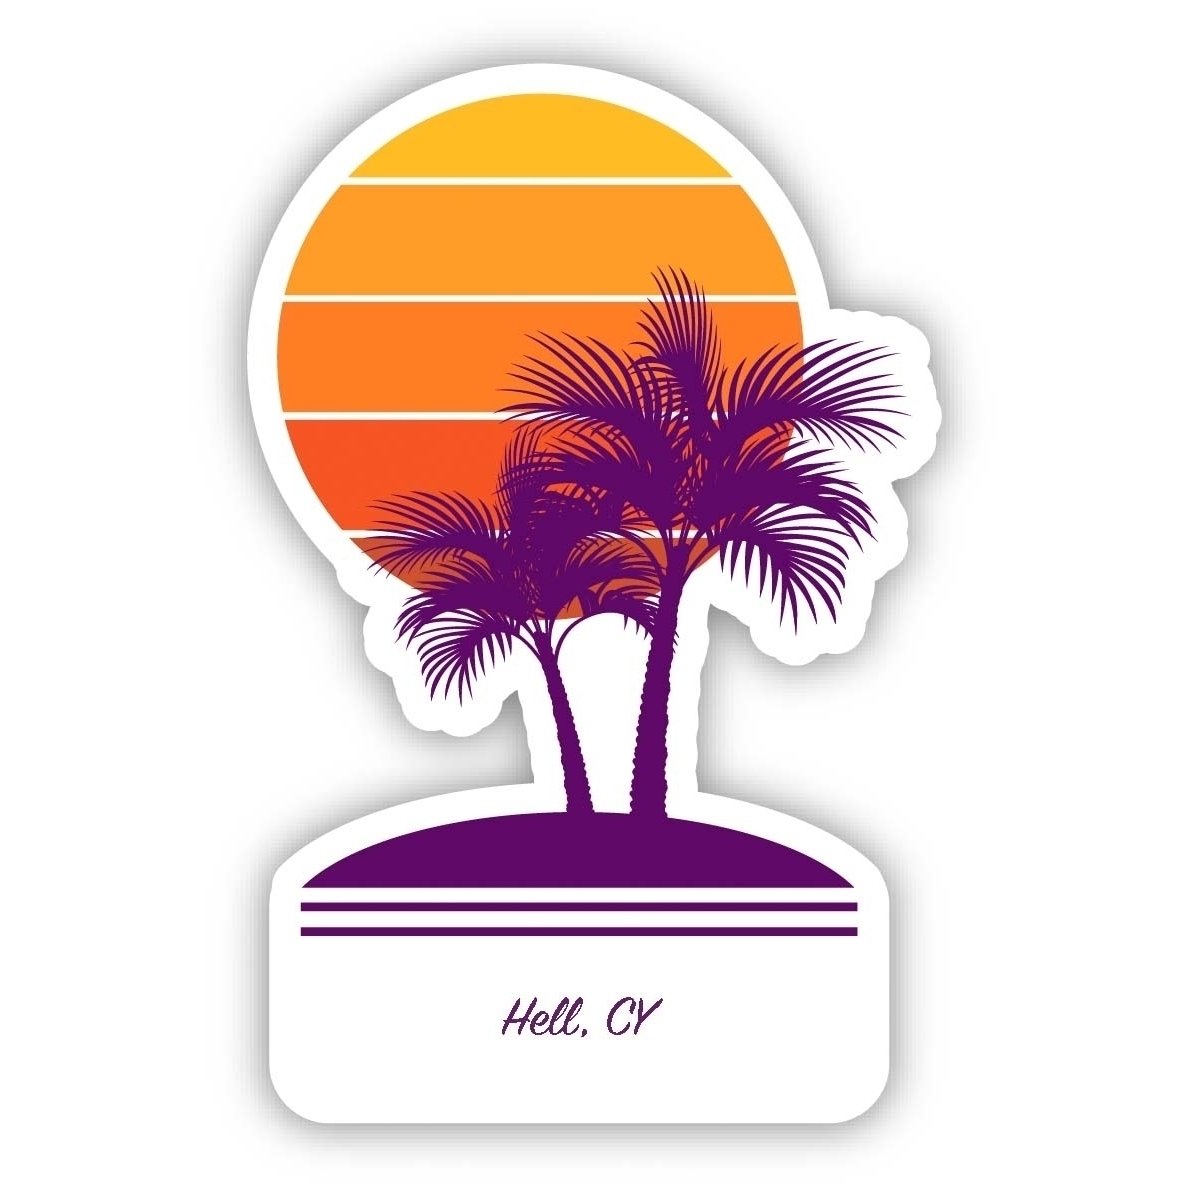 Hell Cayman Islands Souvenir 4 Inch Vinyl Decal Sticker Palm Design